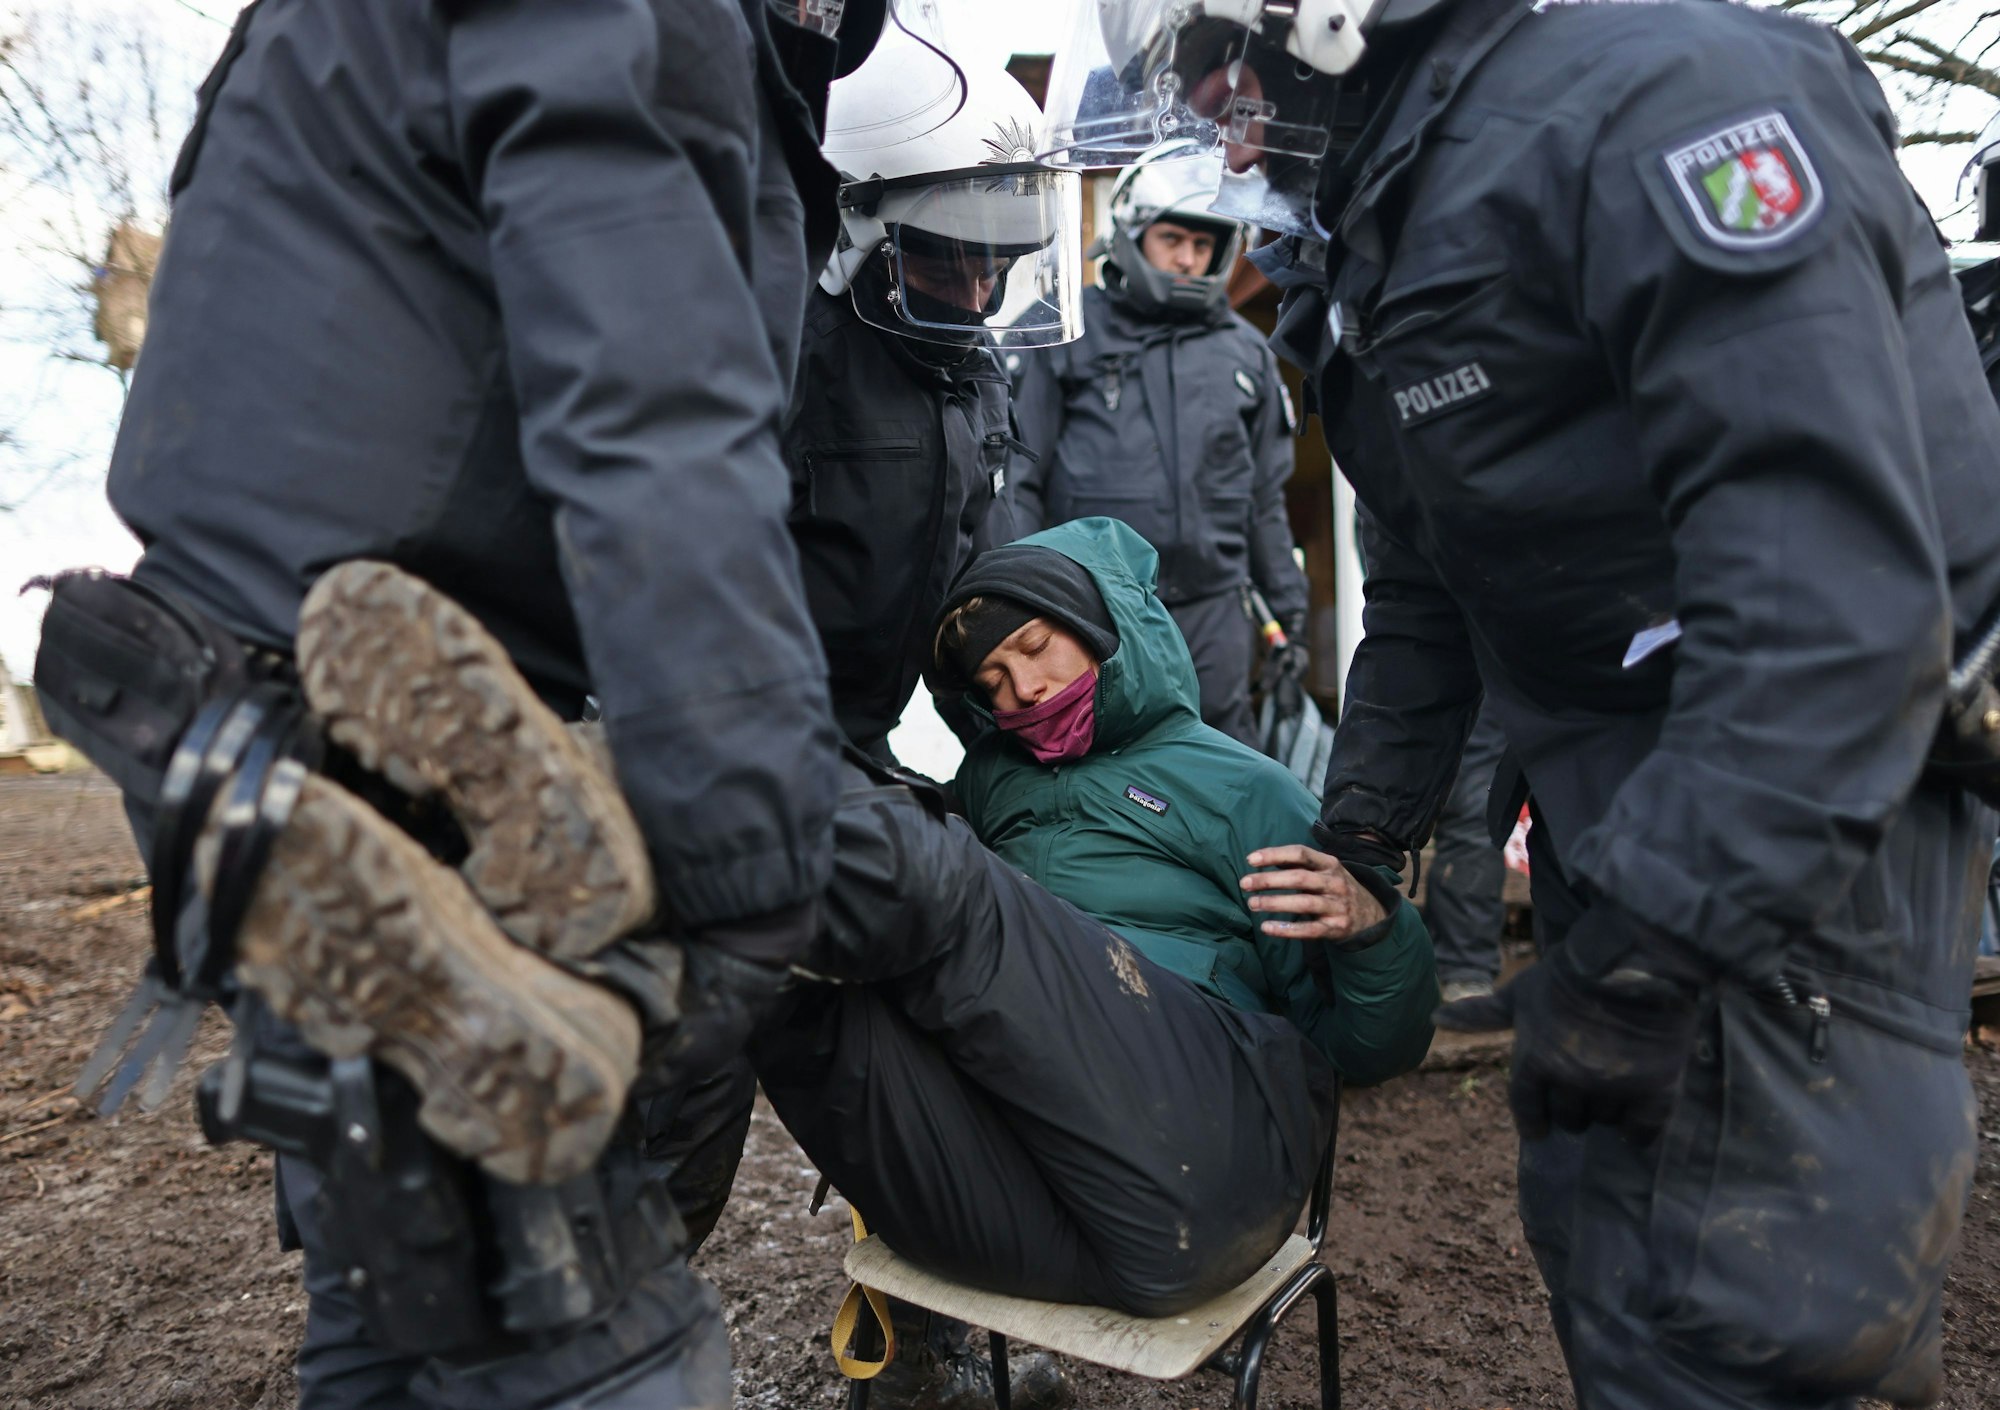 Drei Polizisten greifen eine Demonstrantin, die auf einem Stuhl sitzt, an den Beinen und Armen, um sie wegzutragen.